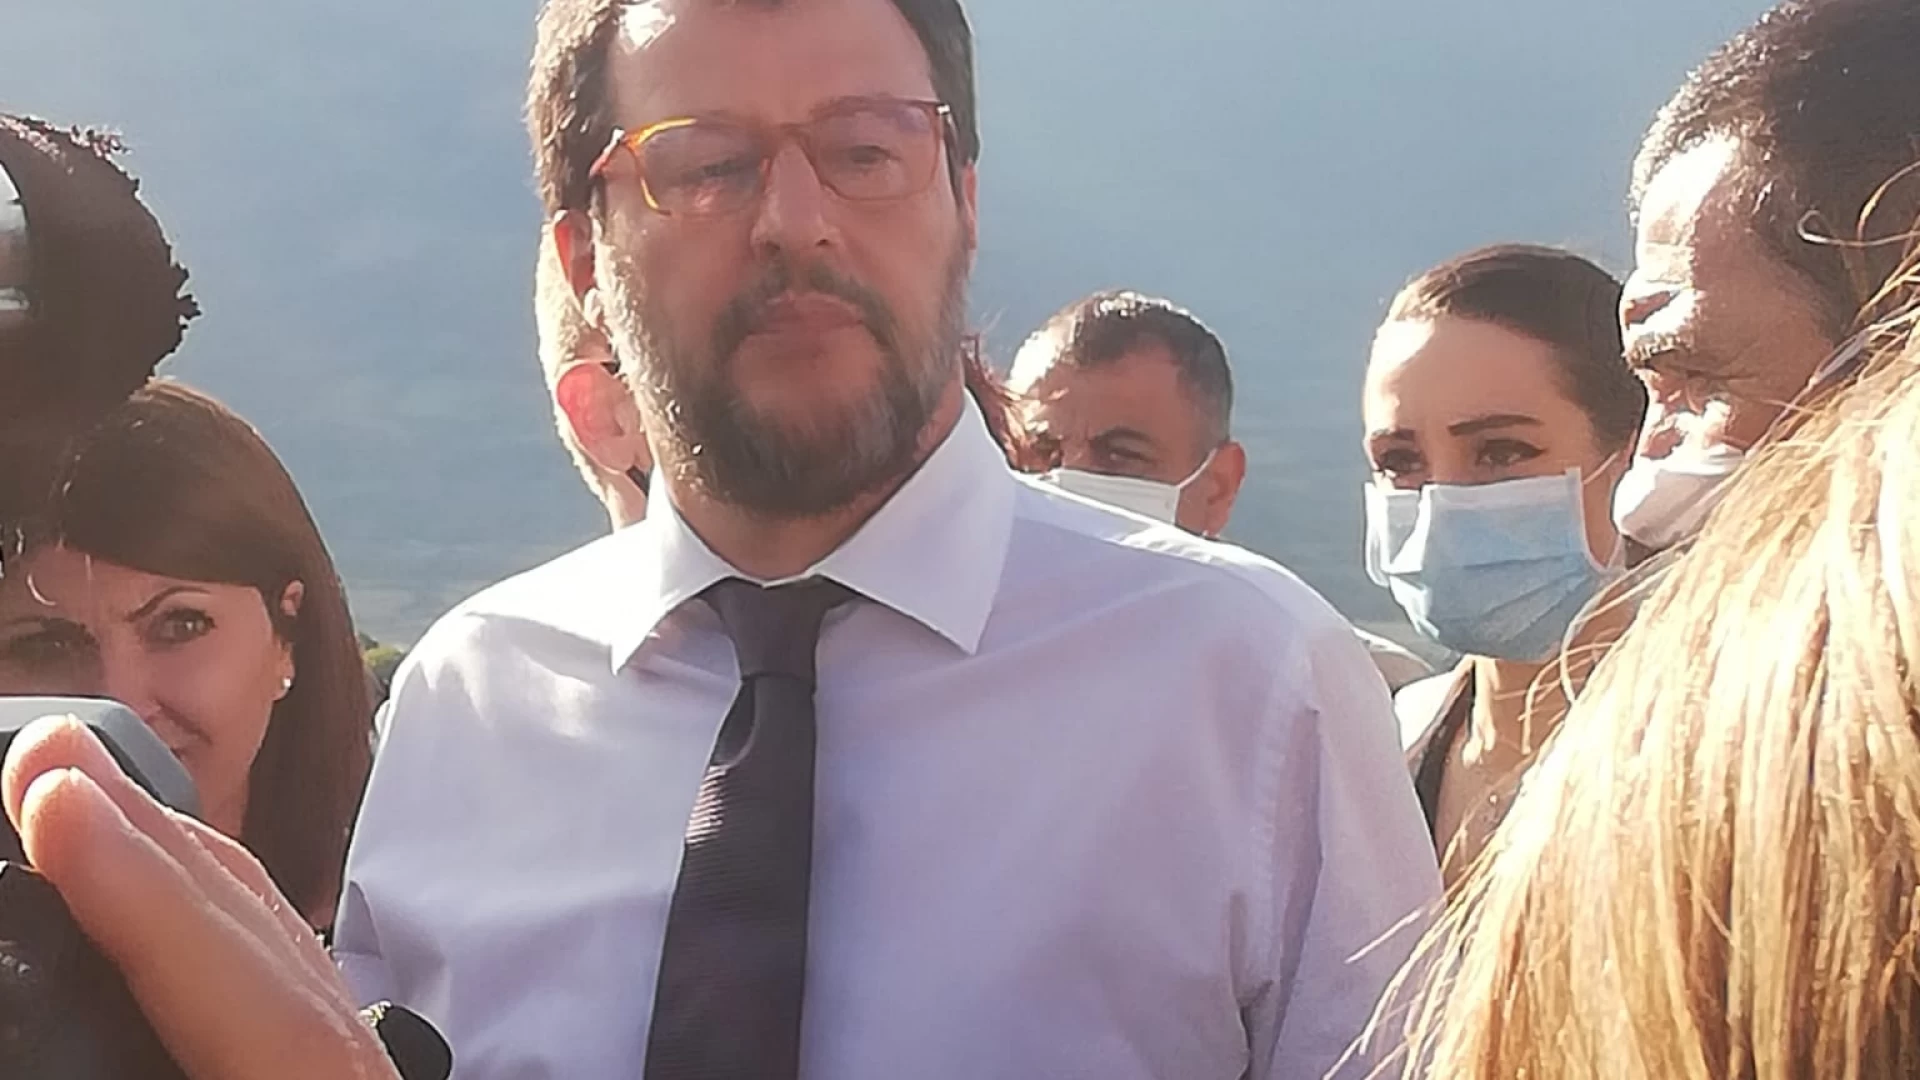 Rionero Sannitico: Matteo Salvini da il via alla visita in Molise. “In Regione diverse cose da rivedere”. Effettuata la visita alla Comunità Figlia di Sion.